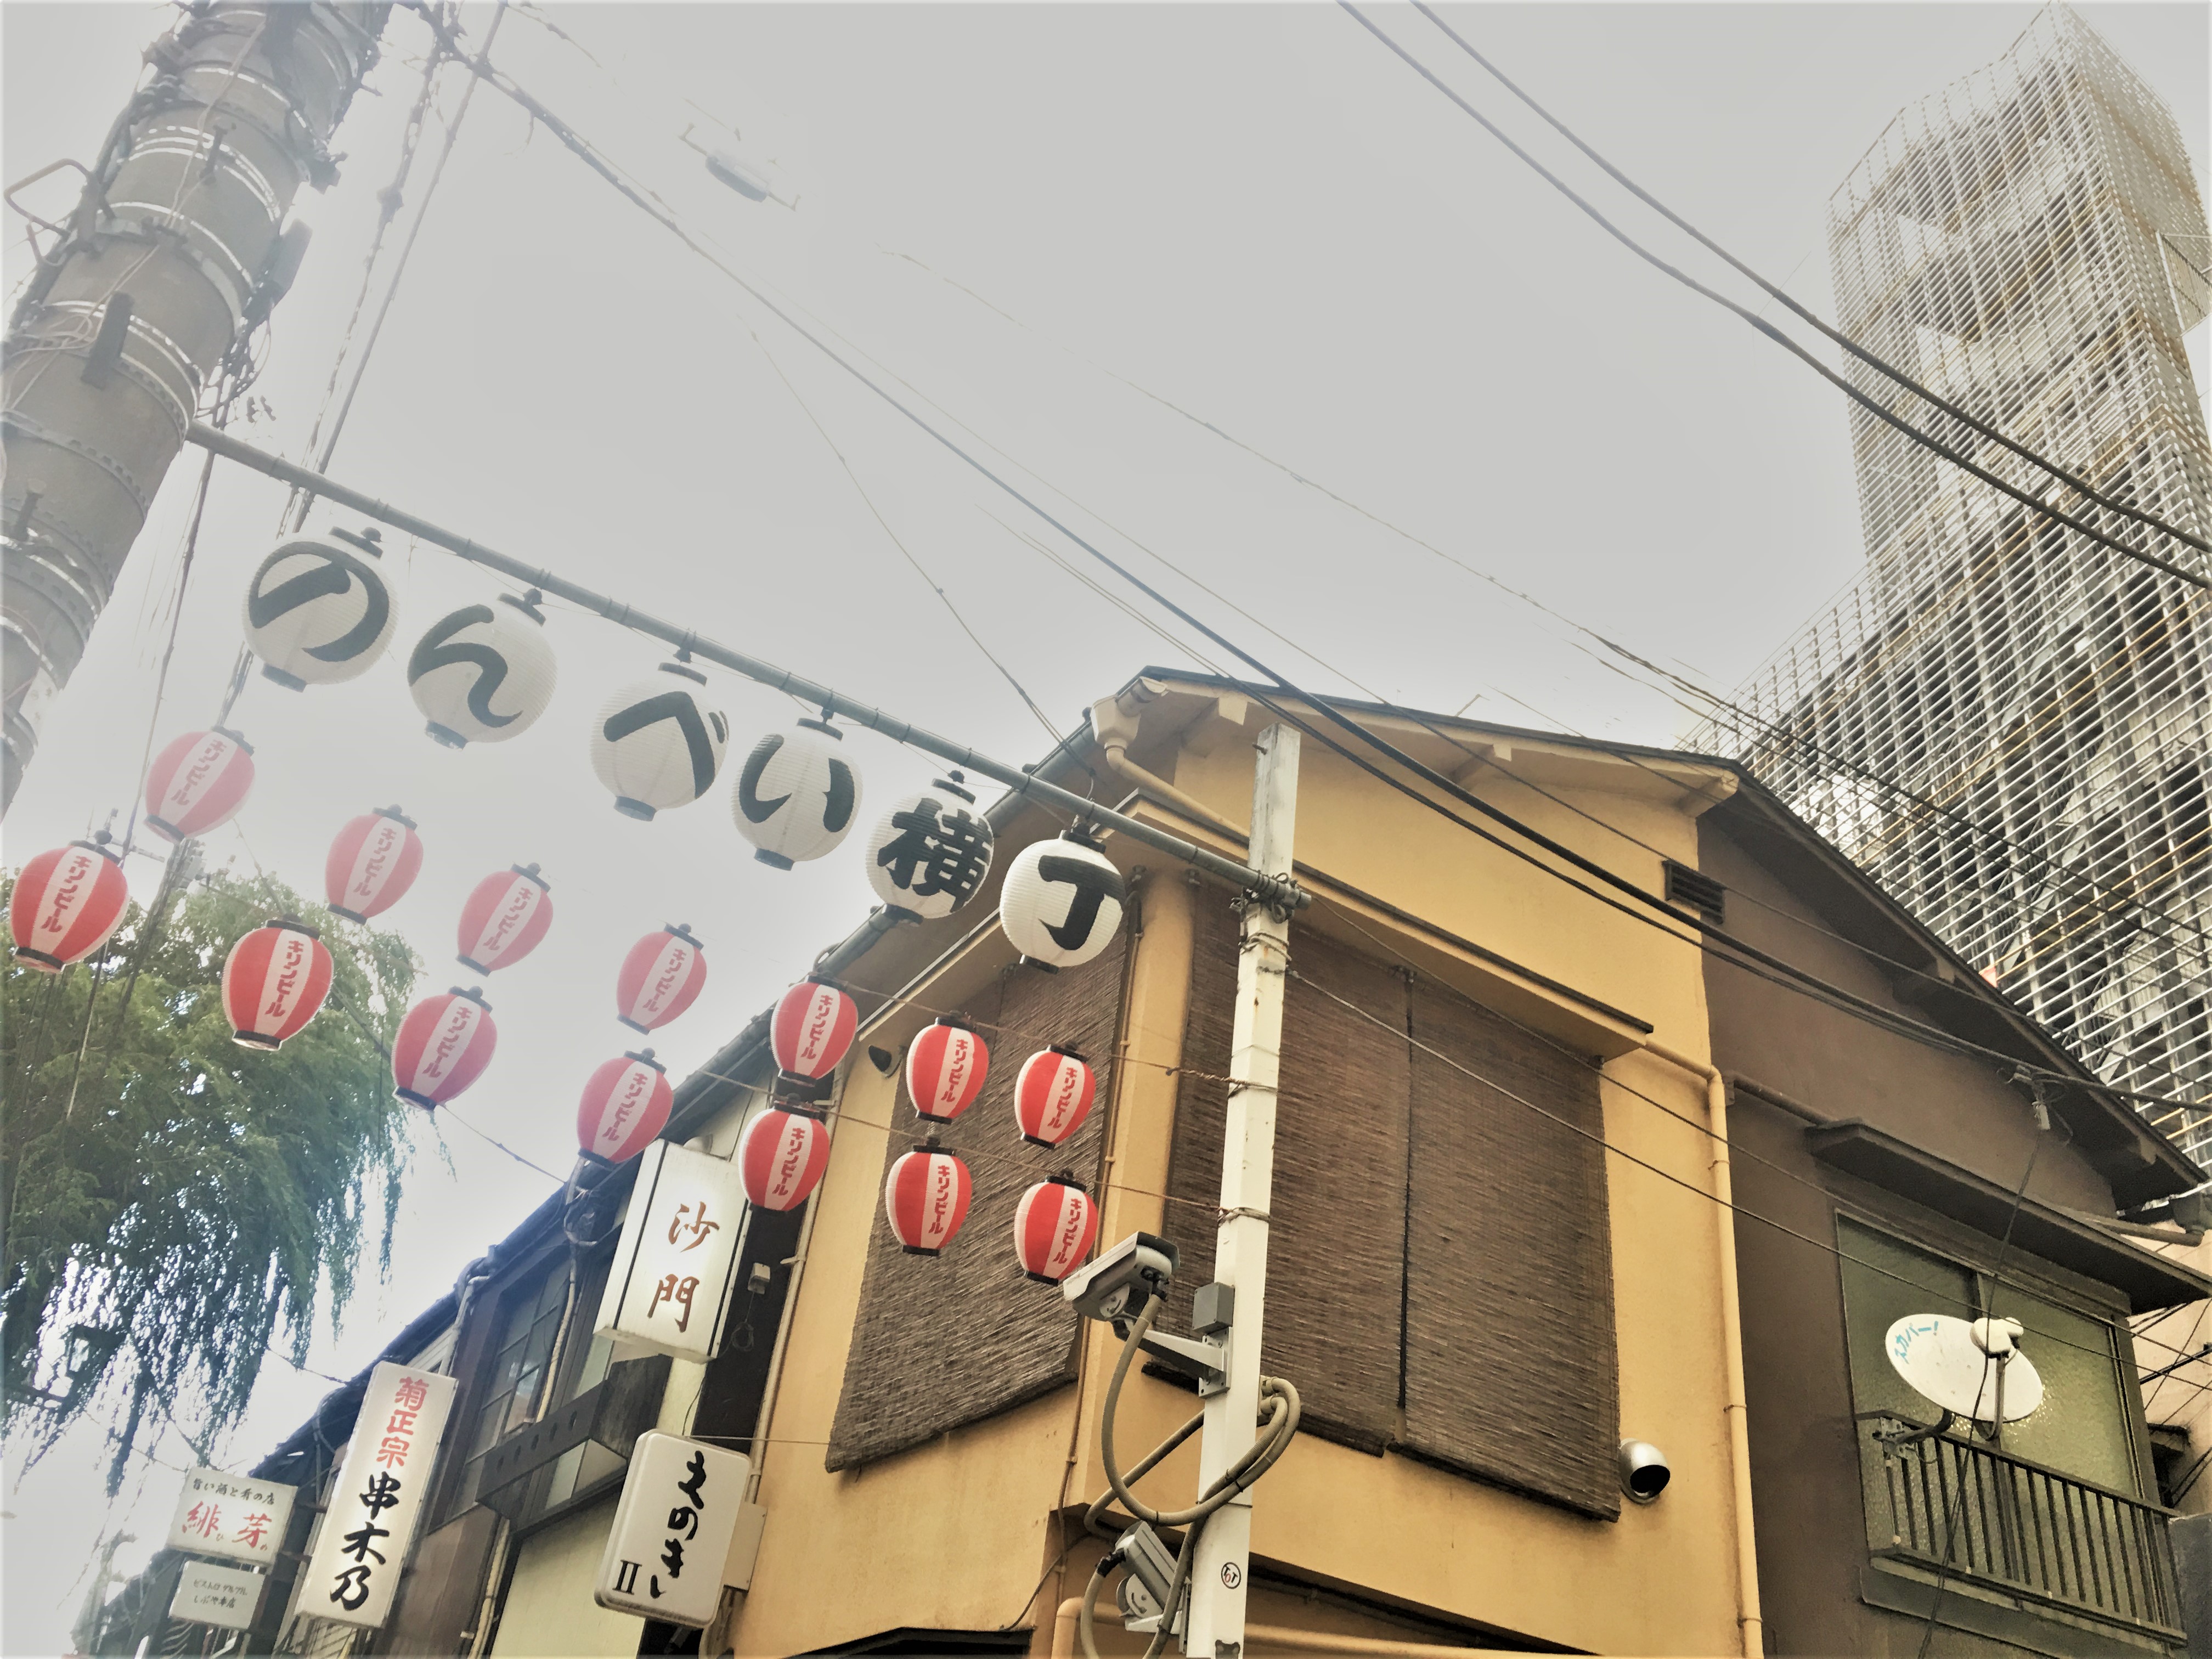 横丁 渋谷 の ん べ い 渋谷・のんべい横丁「行きたいけれど、どの店に行けばわからない」というあなたのためのパーフェクトな5選